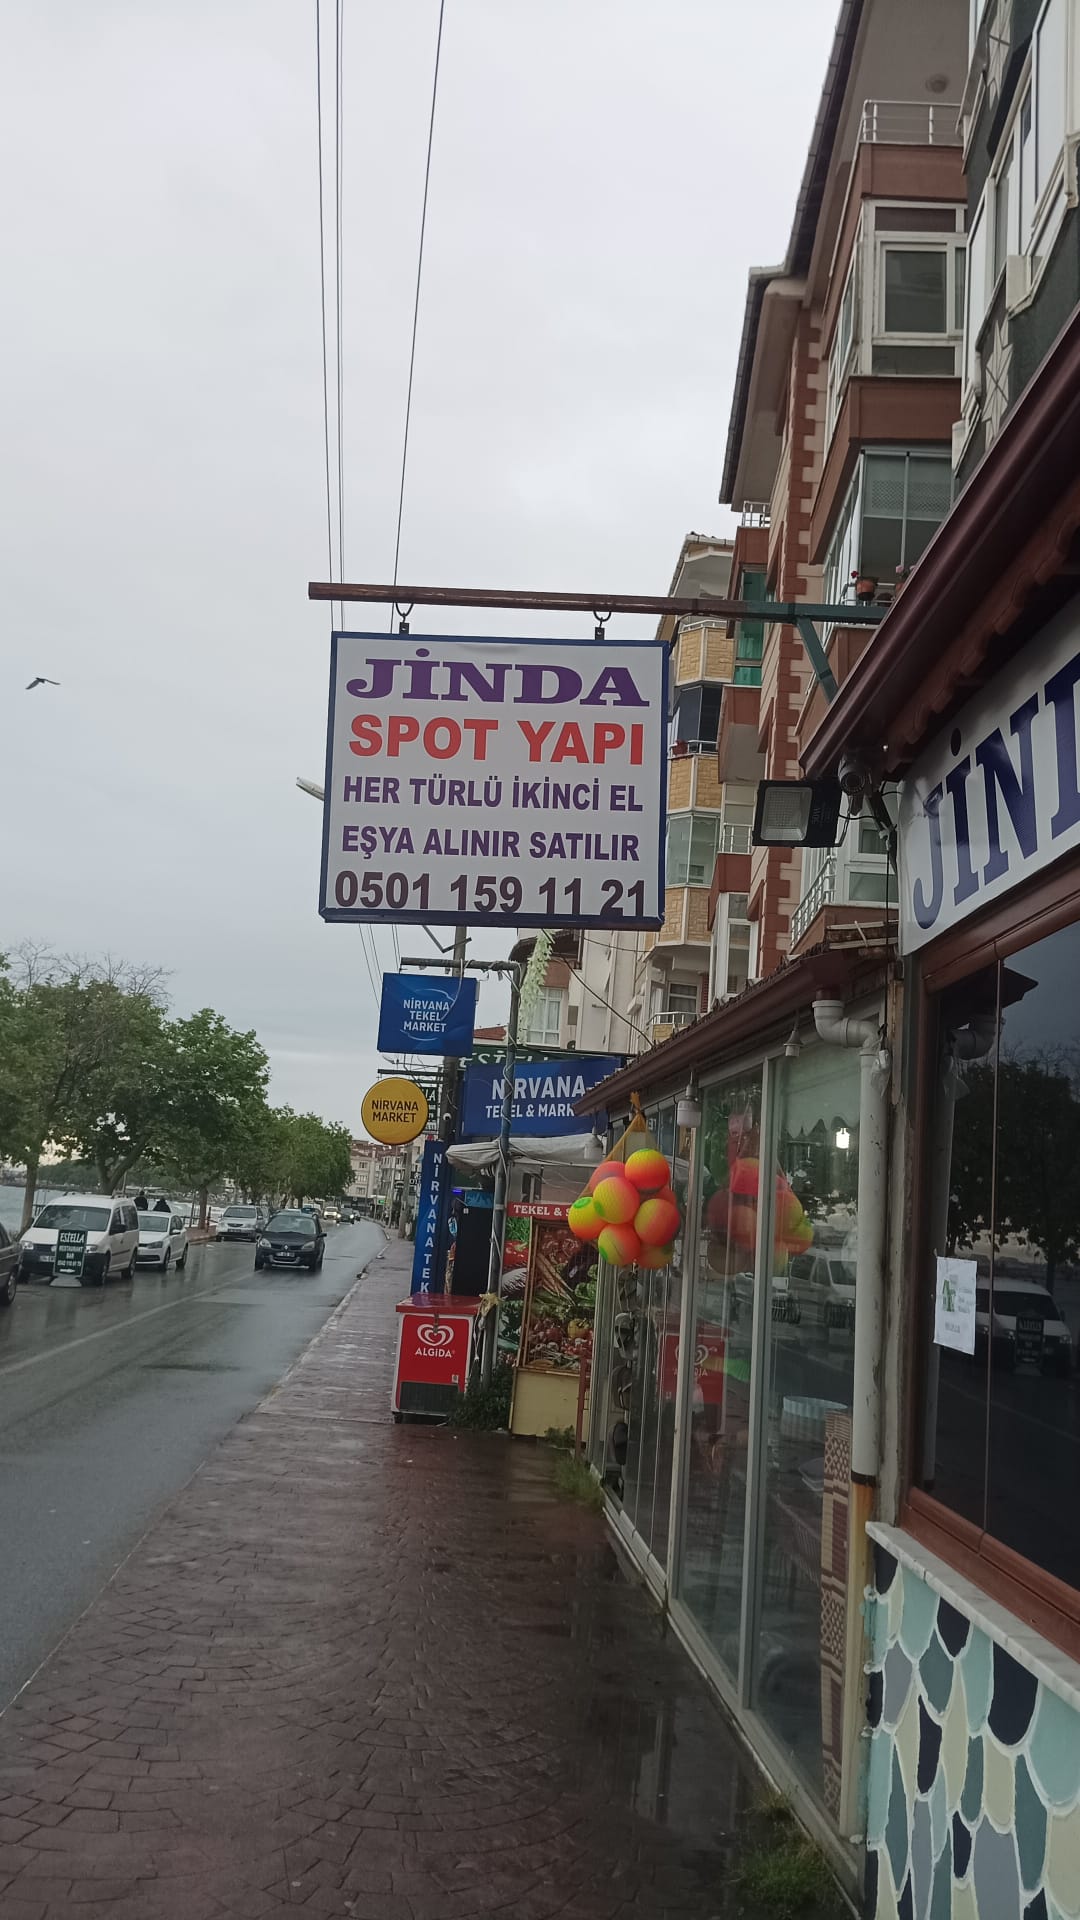 Jinda Spot Yapı, Her Türlü İkinci El Eşya Alım Satımında Hizmetinizde!